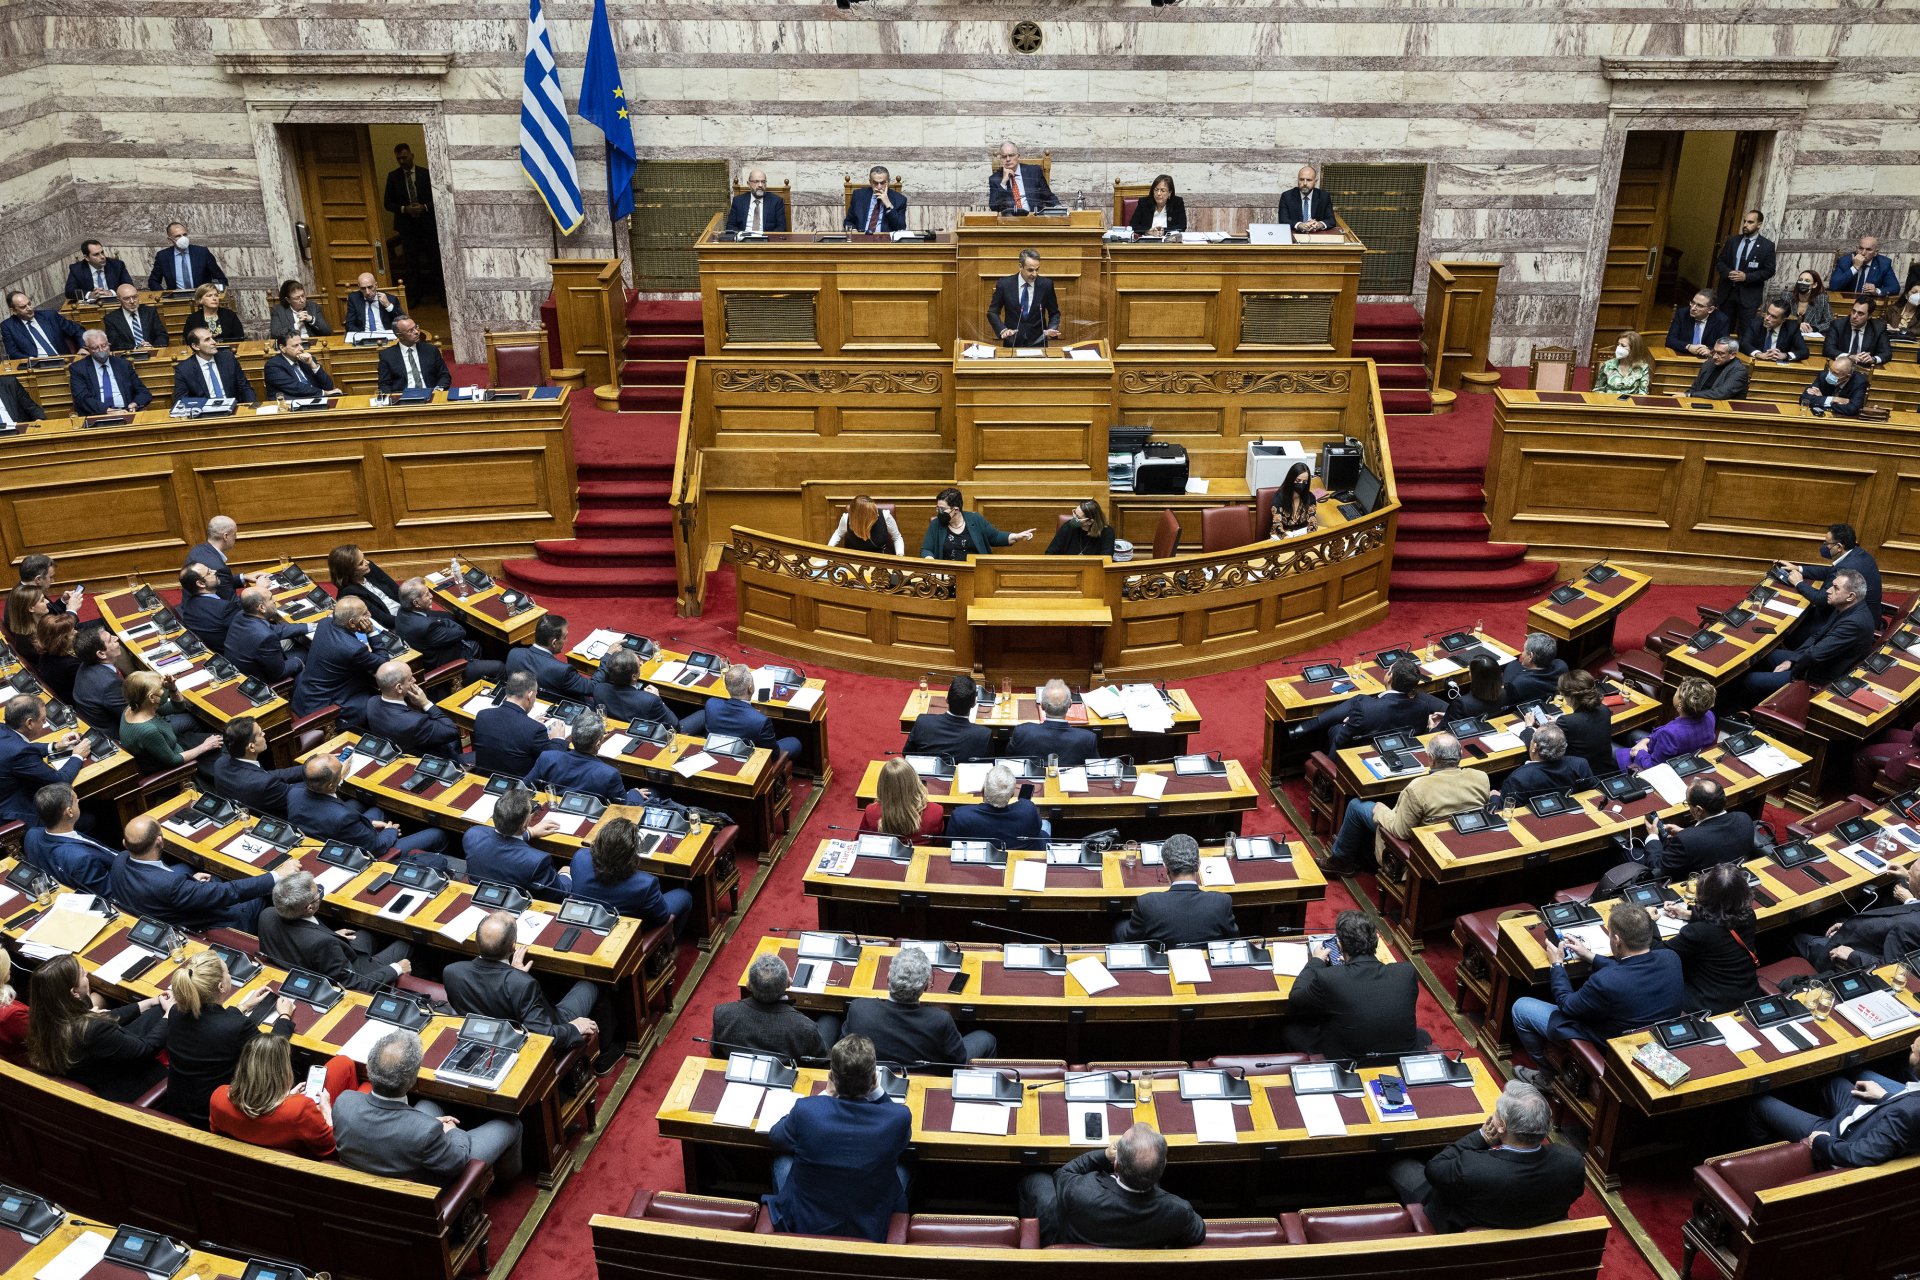 18 декември 2022 г. Парламентът на Гърция приема бюджета за 2023 г. Кириакос Мицотакис защитава проекта от трибуната